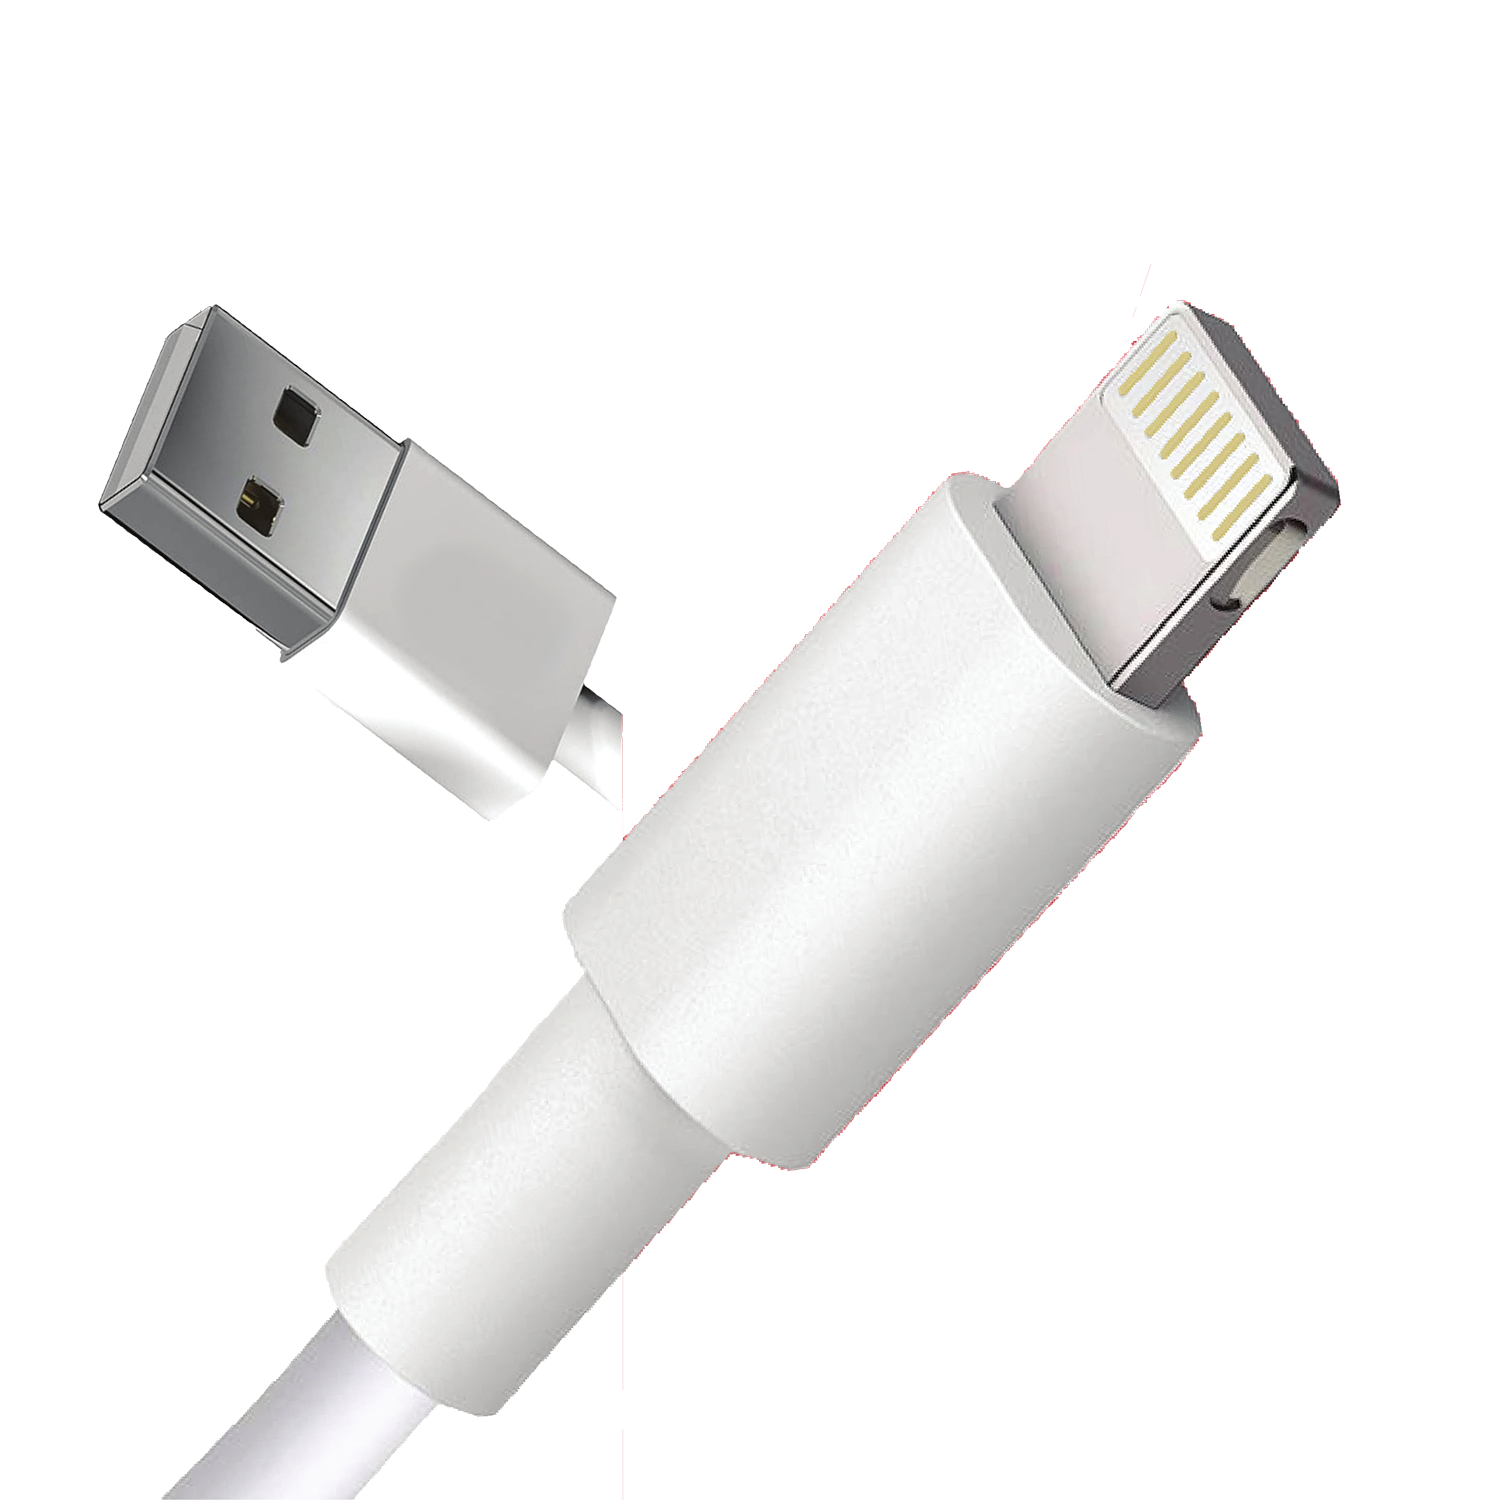 Кабель для зарядки iPhone, iPad, iPod, AirPods Lightning-USB (2м), провод зарядки айфон